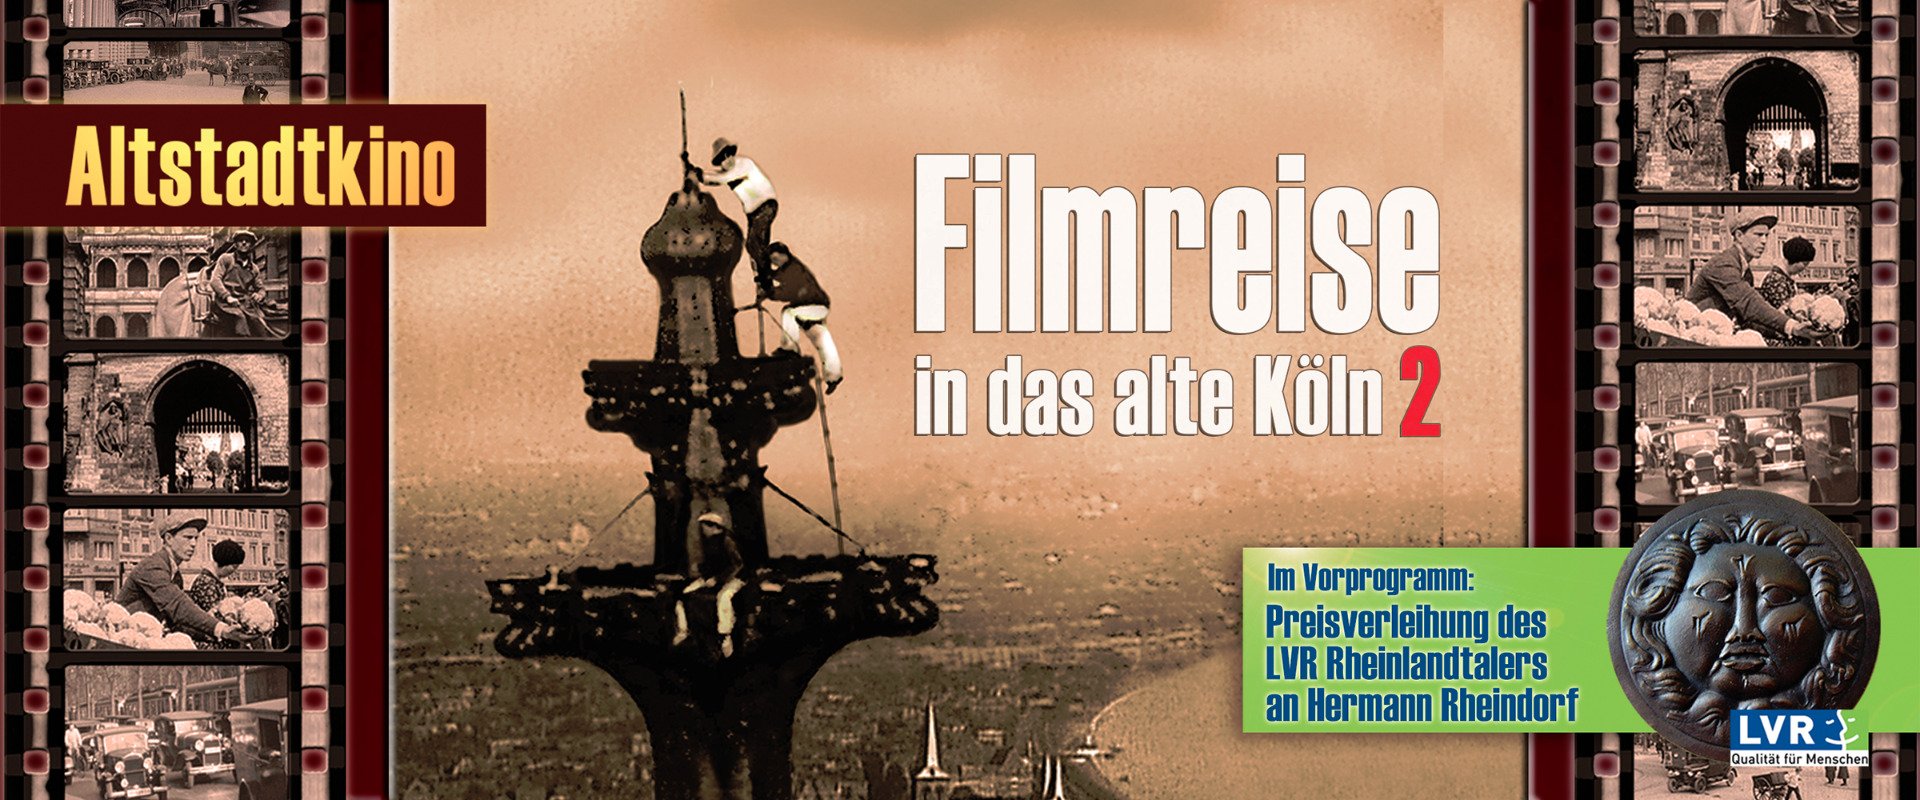 Altstadtkino - Filmreise in das alte Köln 2 